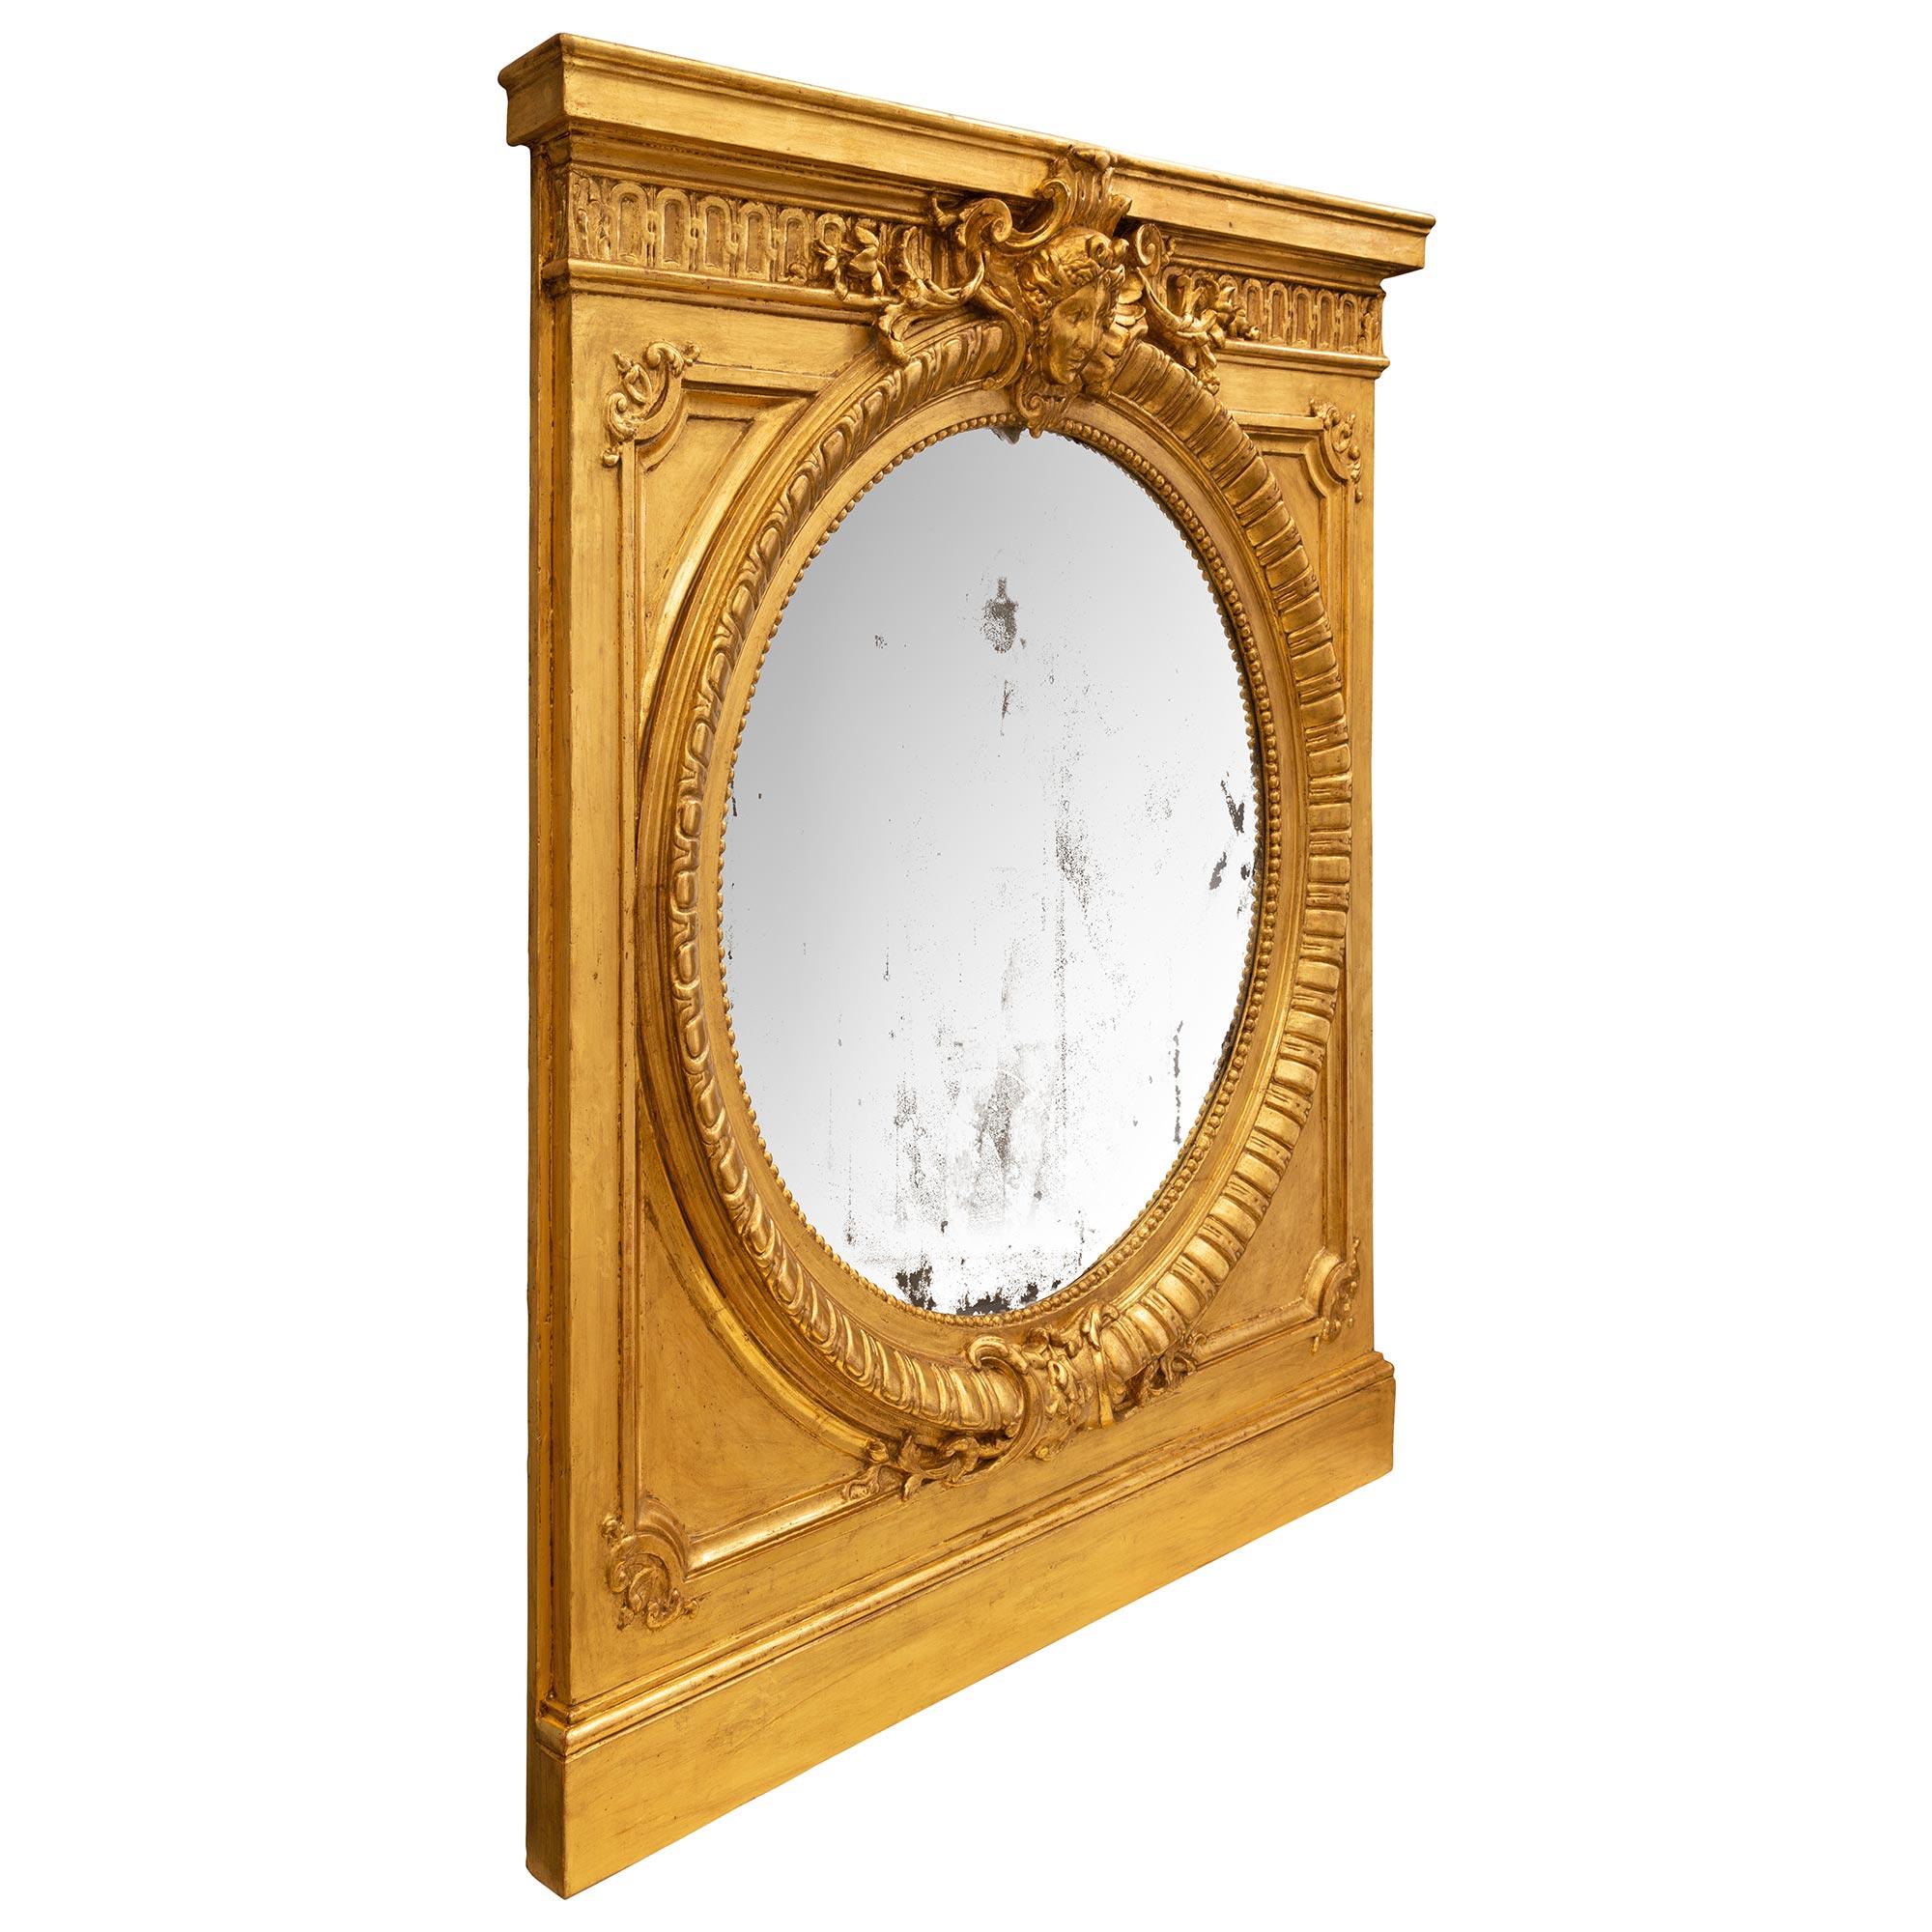 Ein eleganter und äußerst dekorativer französischer Vergoldungsspiegel im Stil Louis XVI aus dem 19. In der Mitte befindet sich die originale runde Spiegelplatte, die von einer feinen, perlenbesetzten und gesprenkelten Rillenbordüre eingerahmt ist.